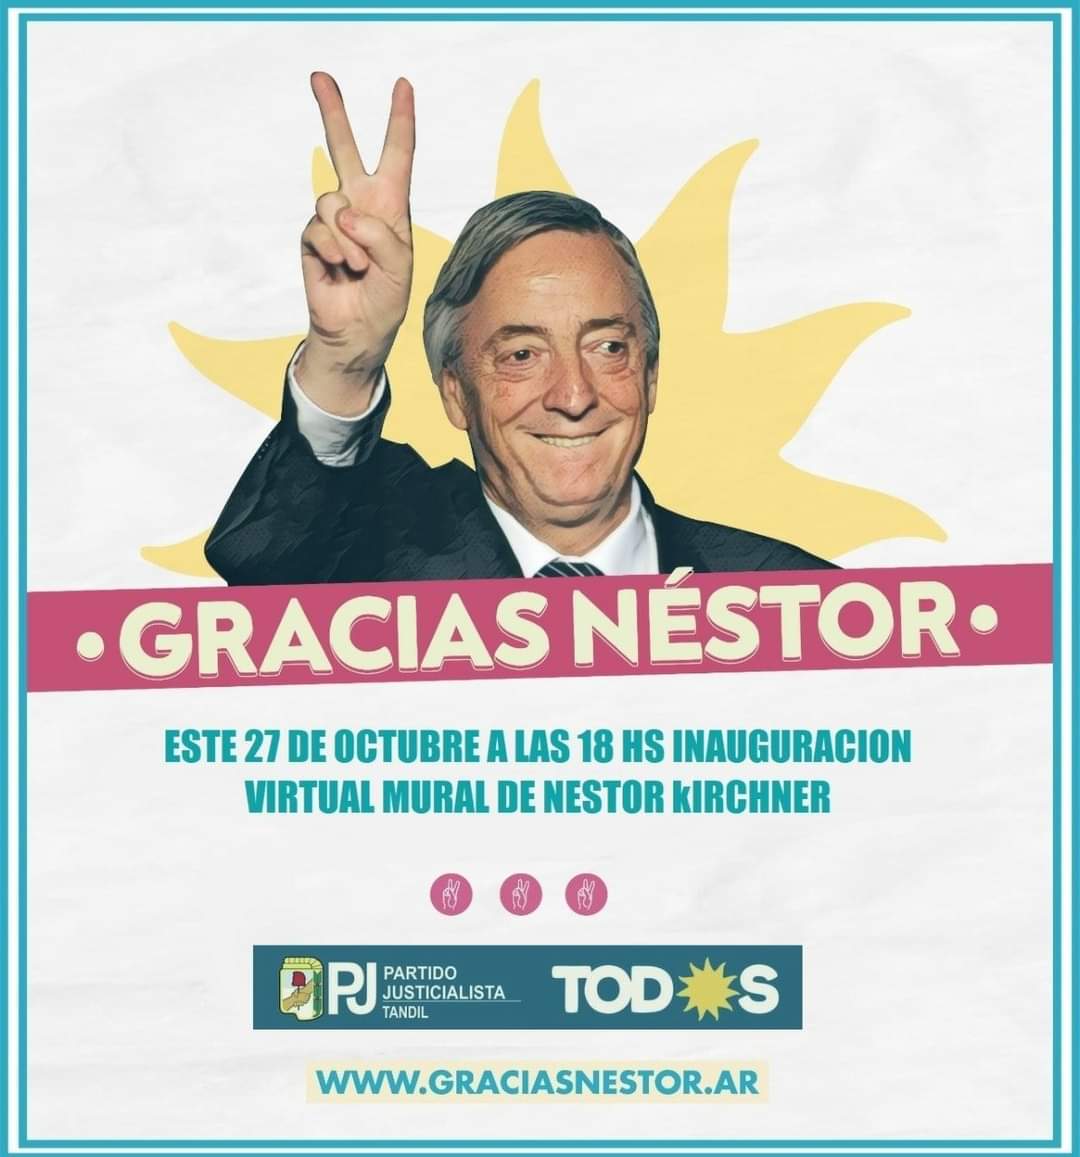 El Frente de Todos realizará un homenaje virtual en el PJ Tandil, a 10 años del fallecimiento de Néstor Kirchner